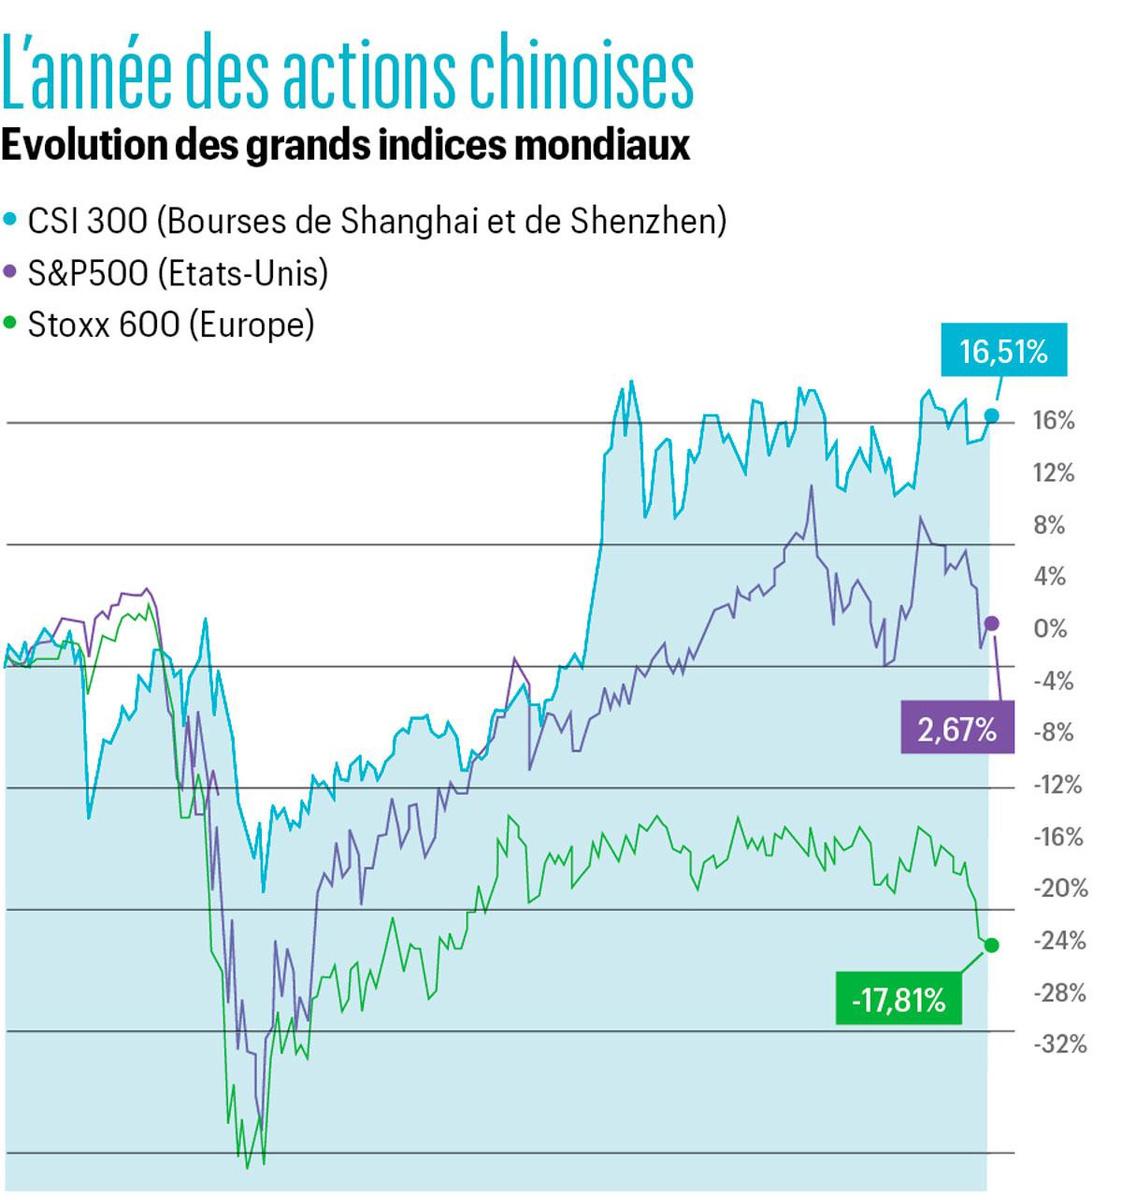 Le réveil des actions chinoises: les bourses de Shanghai et de Shenzhen en progression solide depuis janvier